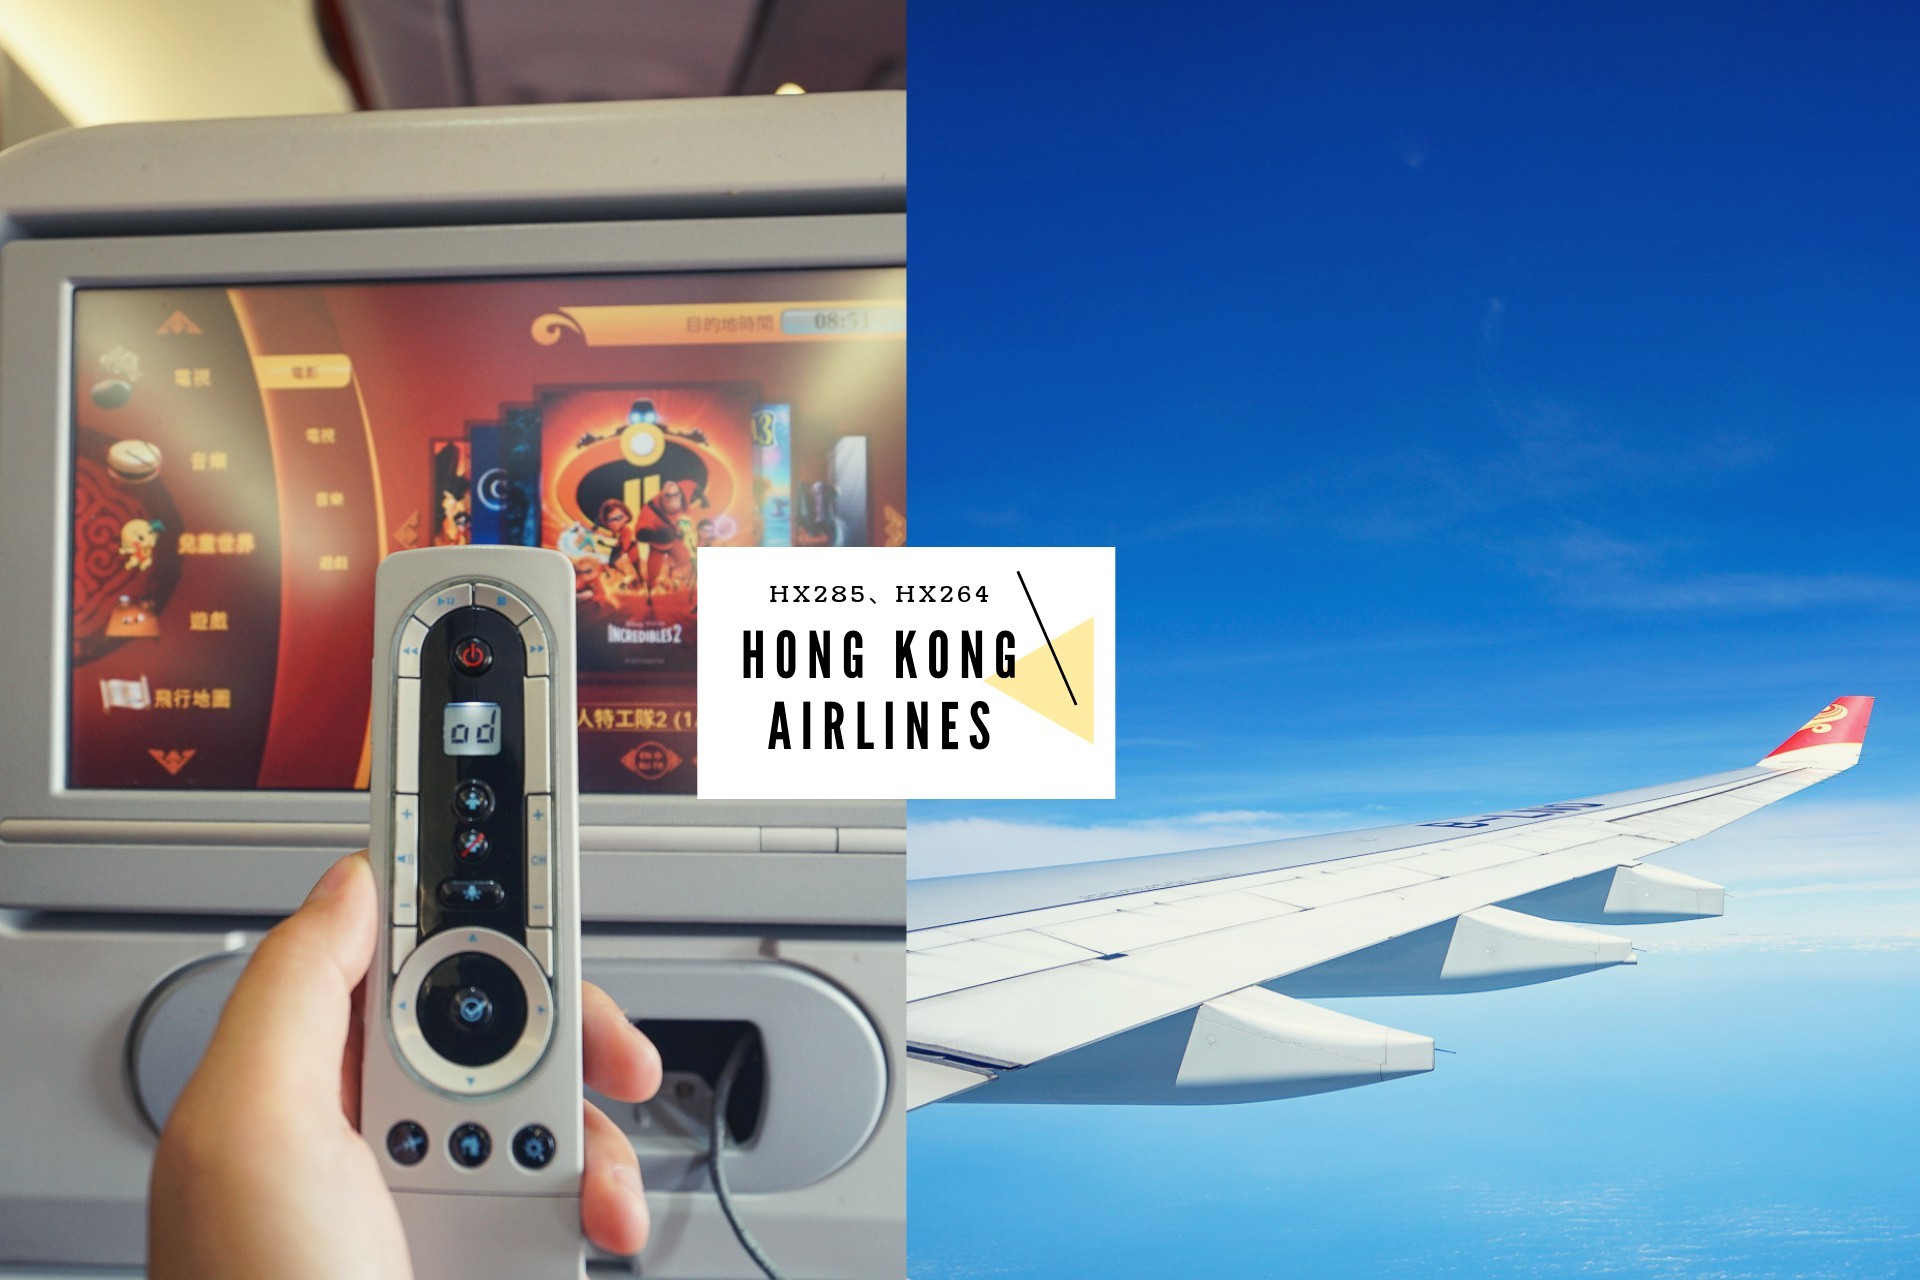 【飛行紀錄】香港航空Hong Kong Airlines -HX285、HX264台北香港來回心得